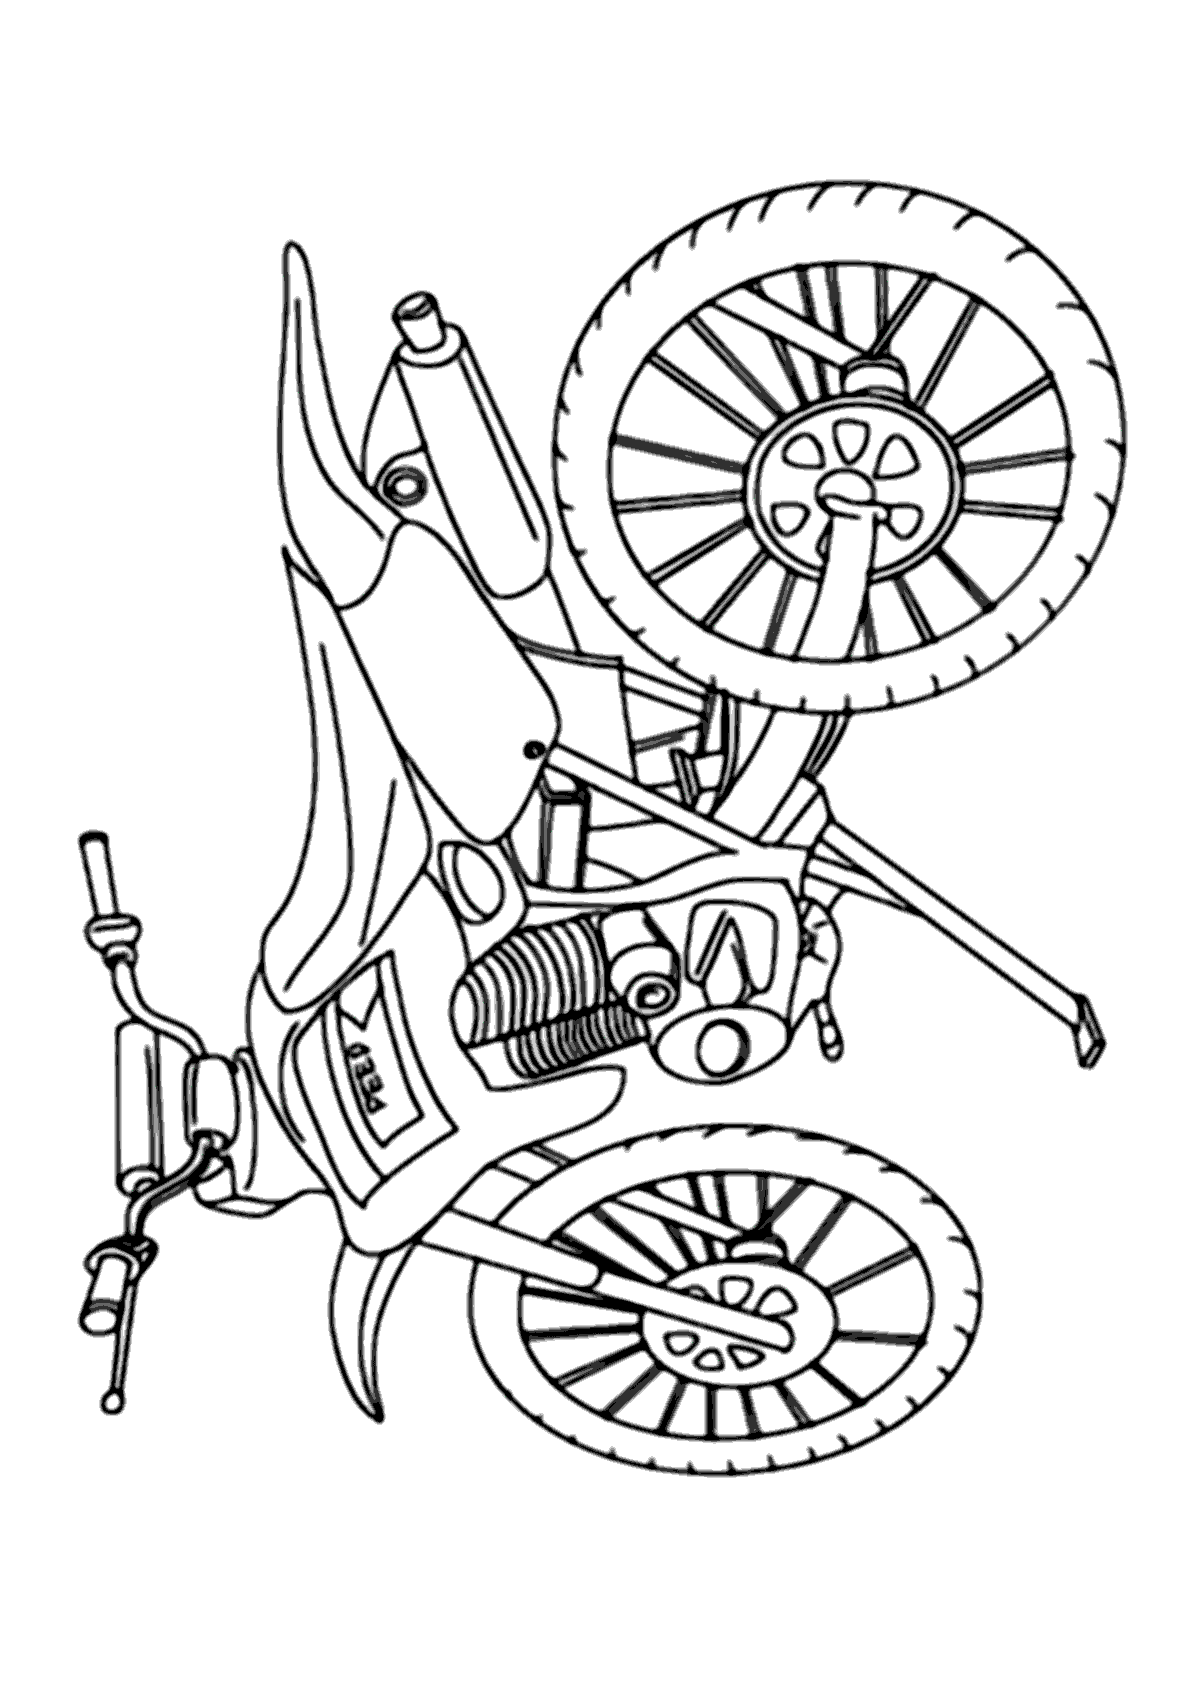 Desenho Para Colorir motocross - Imagens Grátis Para Imprimir - img 24762